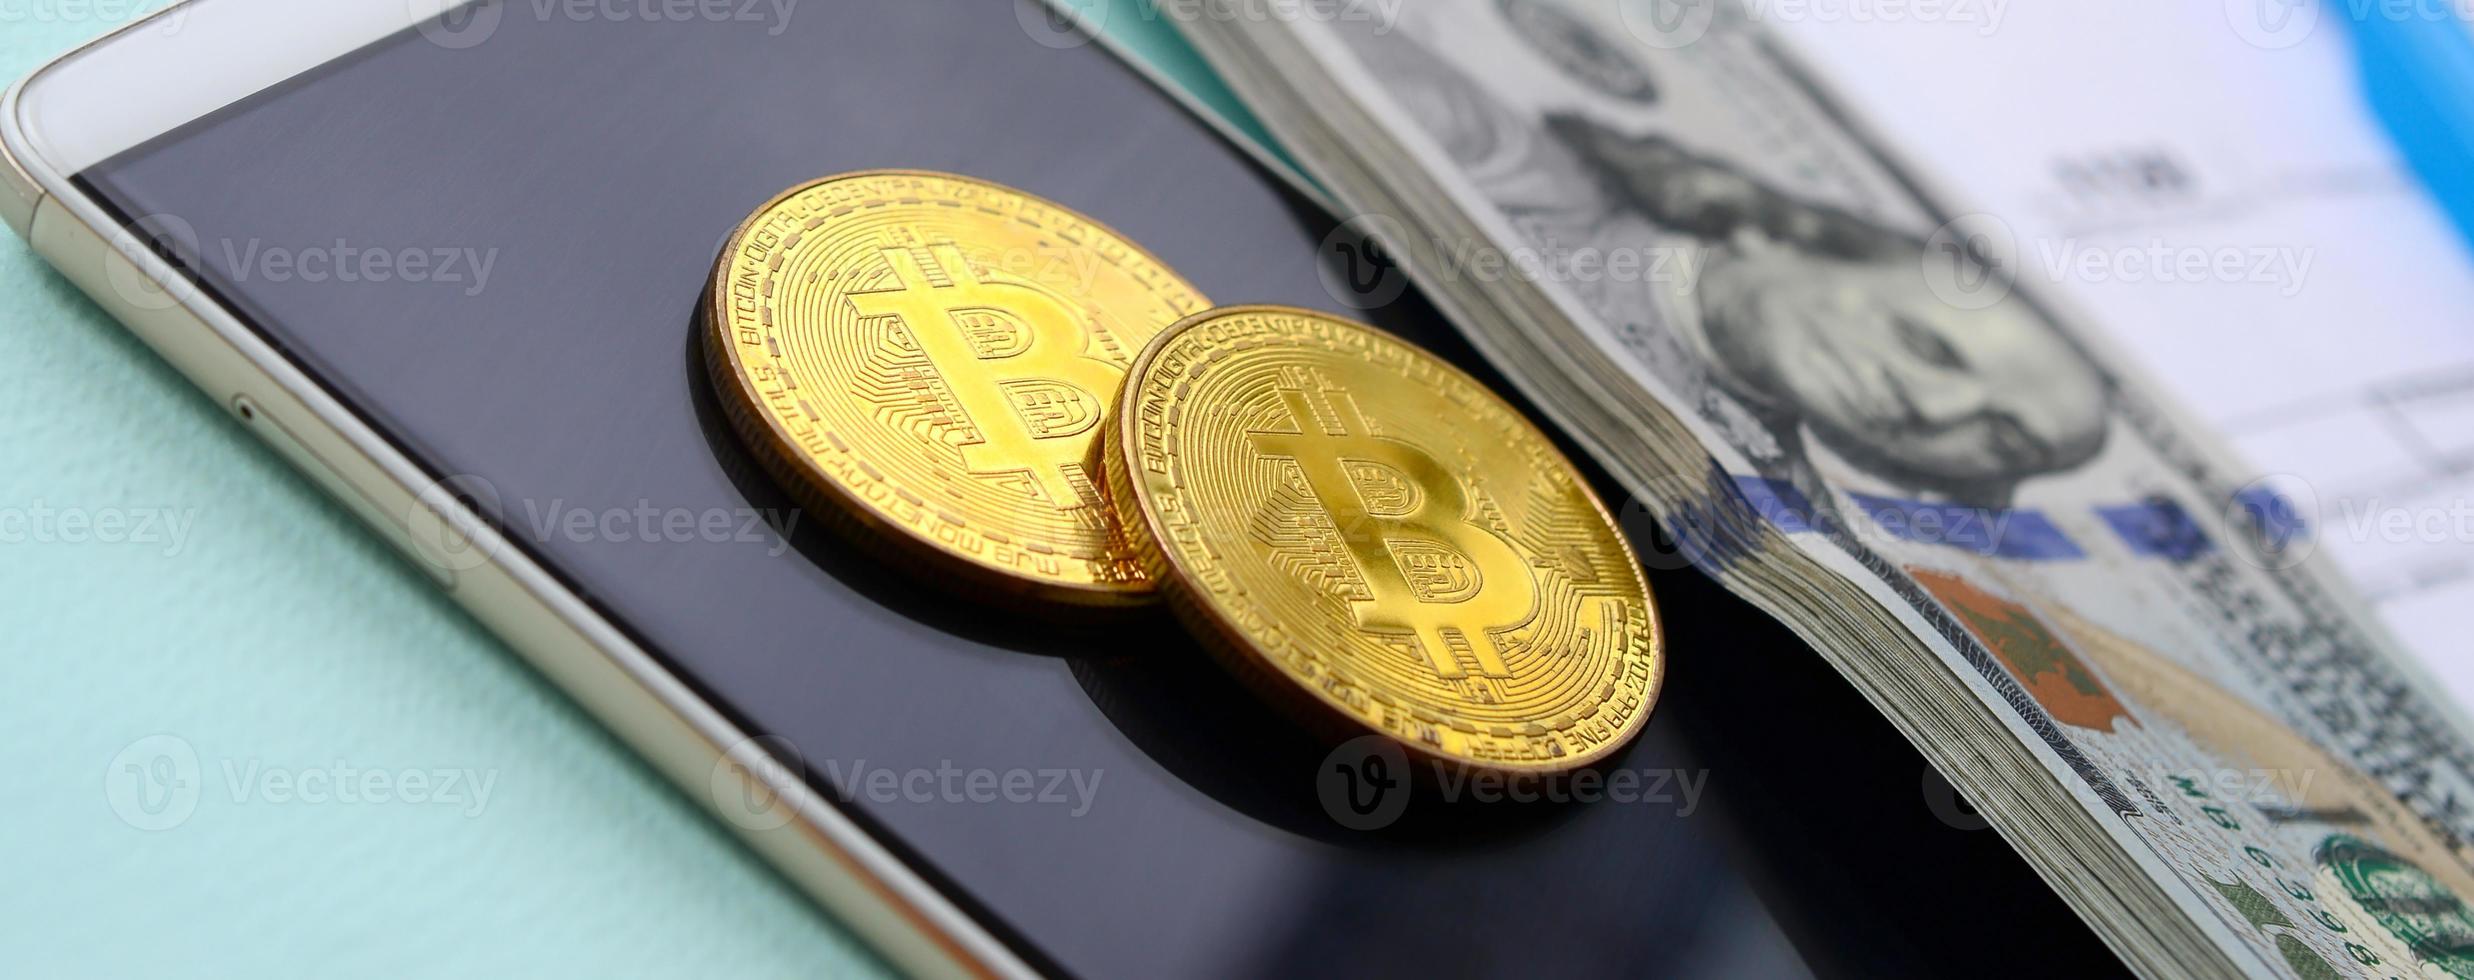 bitcoins encontra-se com os formulários de imposto, notas de cem dólares e smartphone em um fundo azul claro. restituição do Imposto de Renda foto